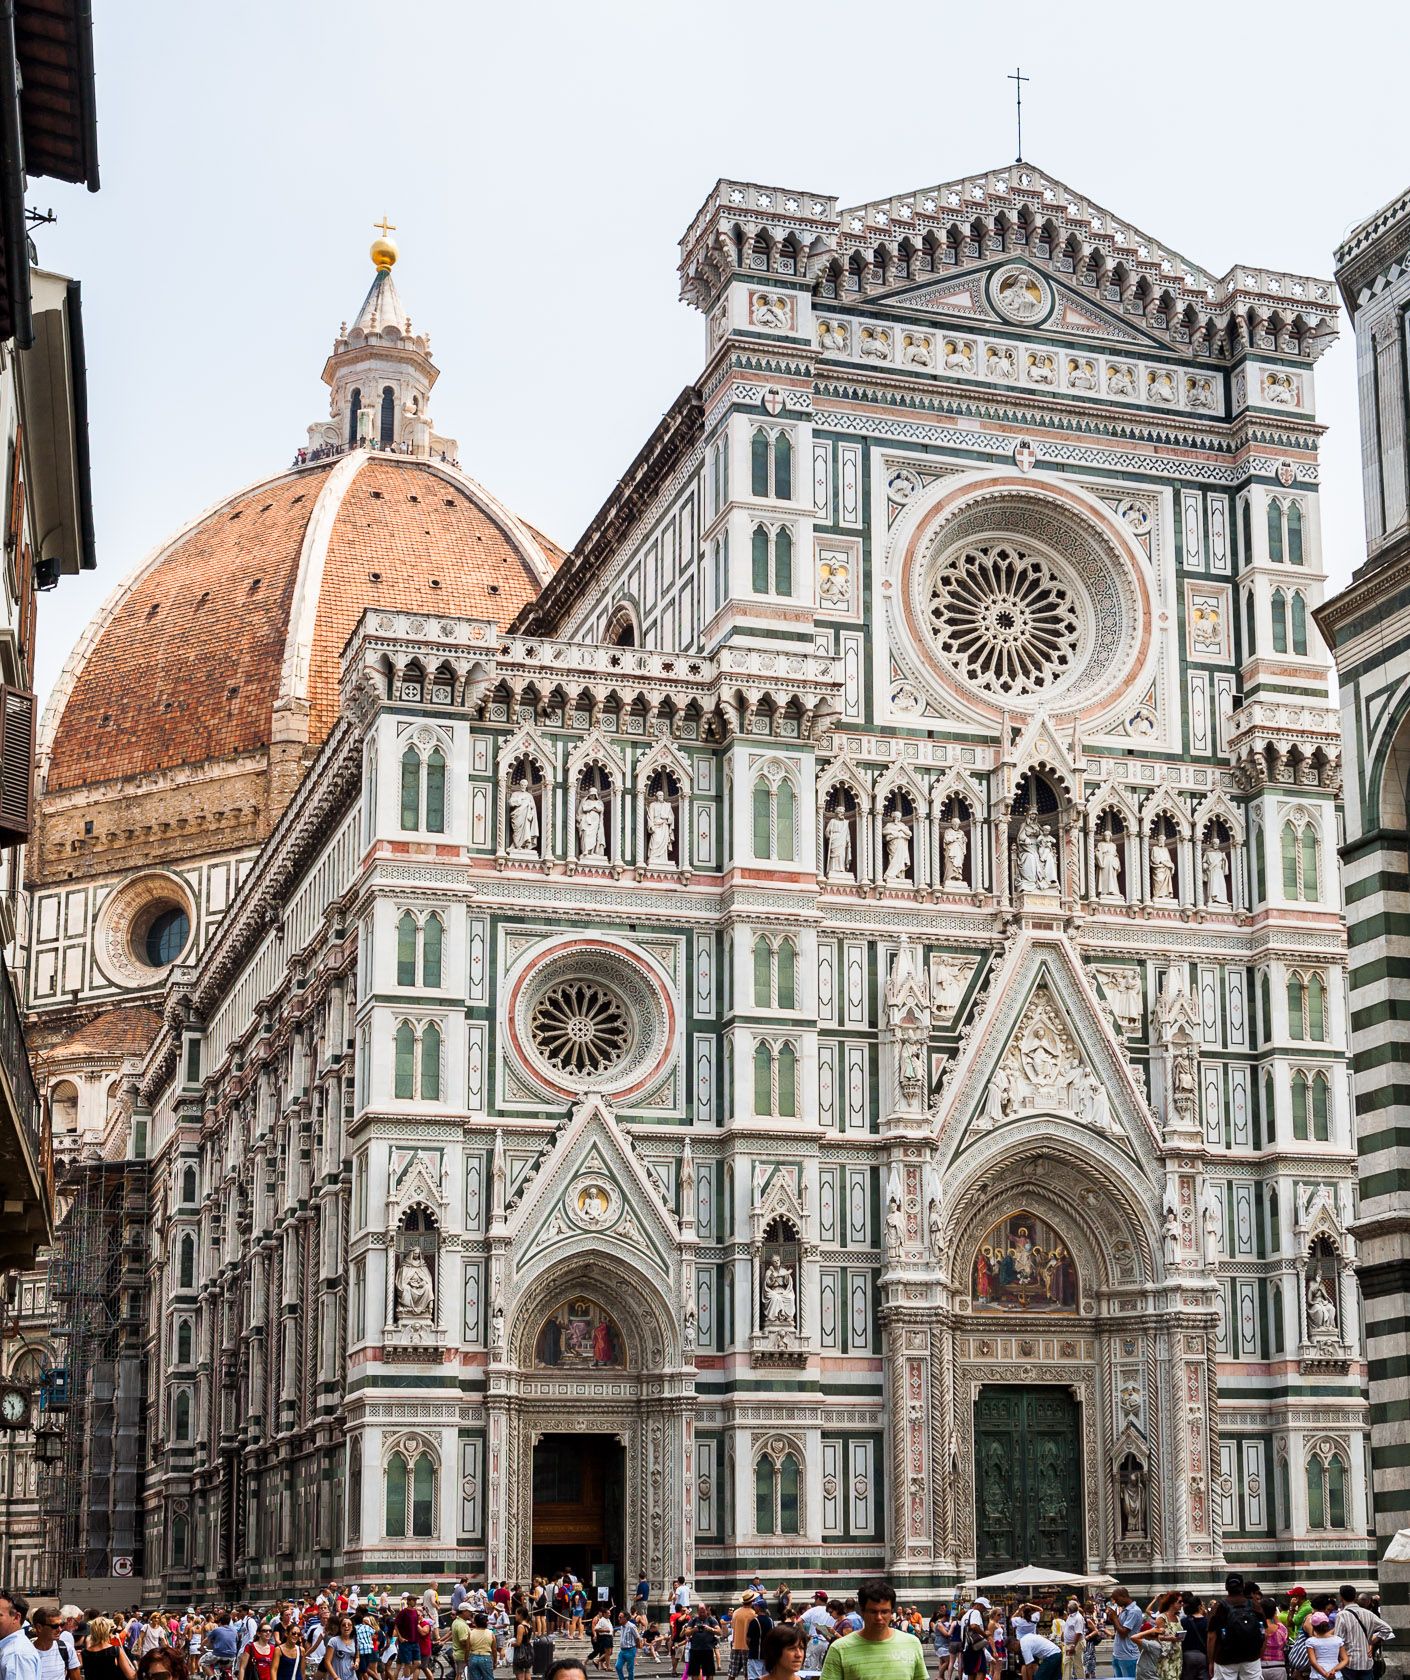 Fasada katedry Santa Maria del Fiore we Florencji. Na drugim planie widoczna wspaniała kopuła przykrywająca wschodnią część budowli.